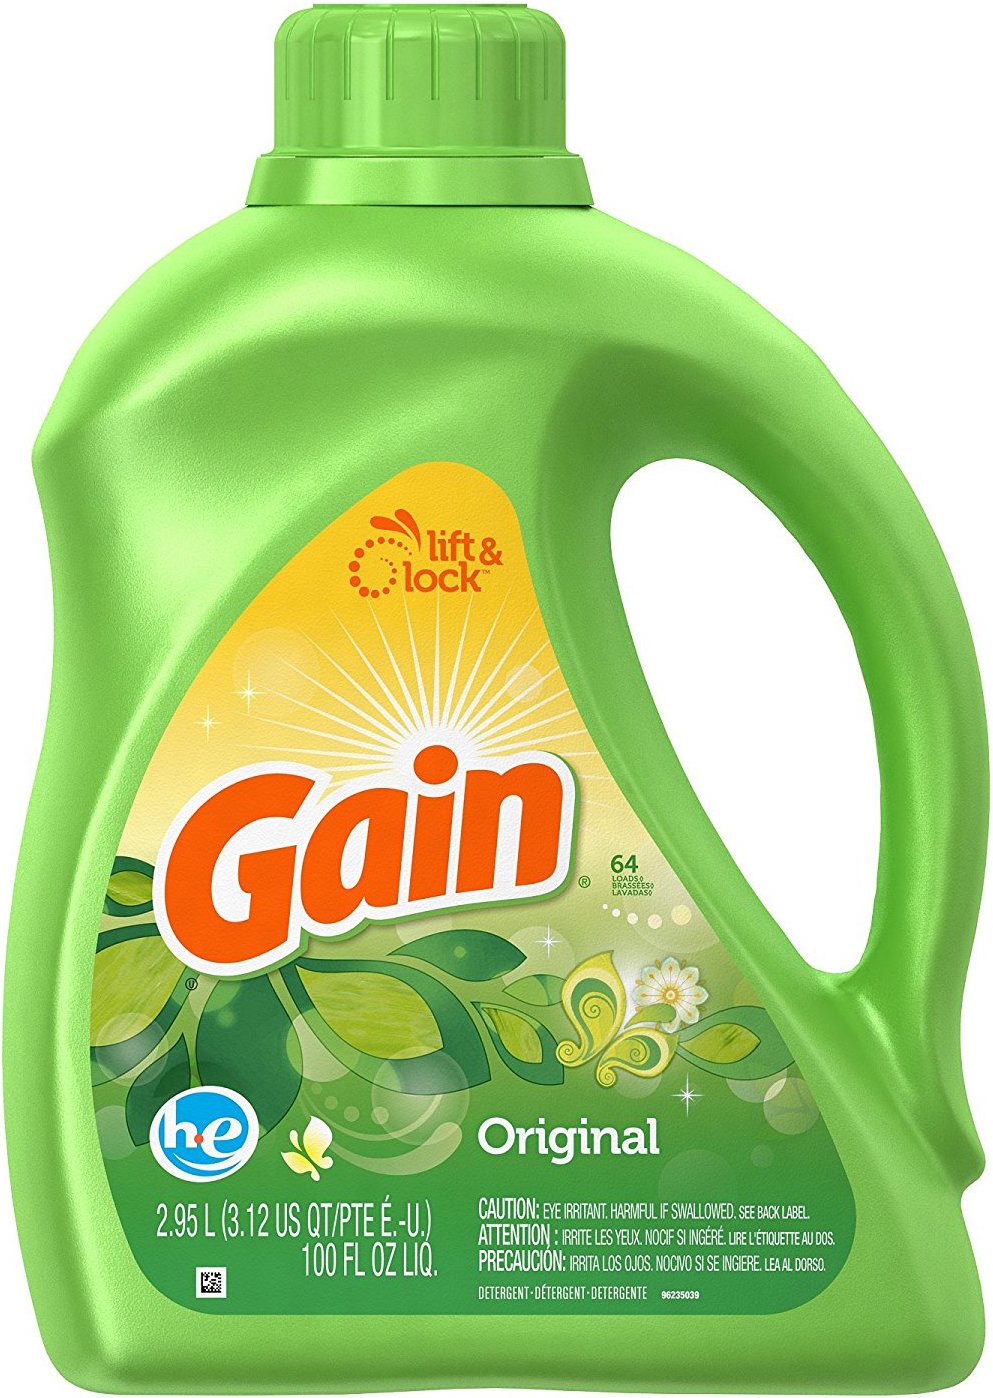 Product image of Gain HE Original